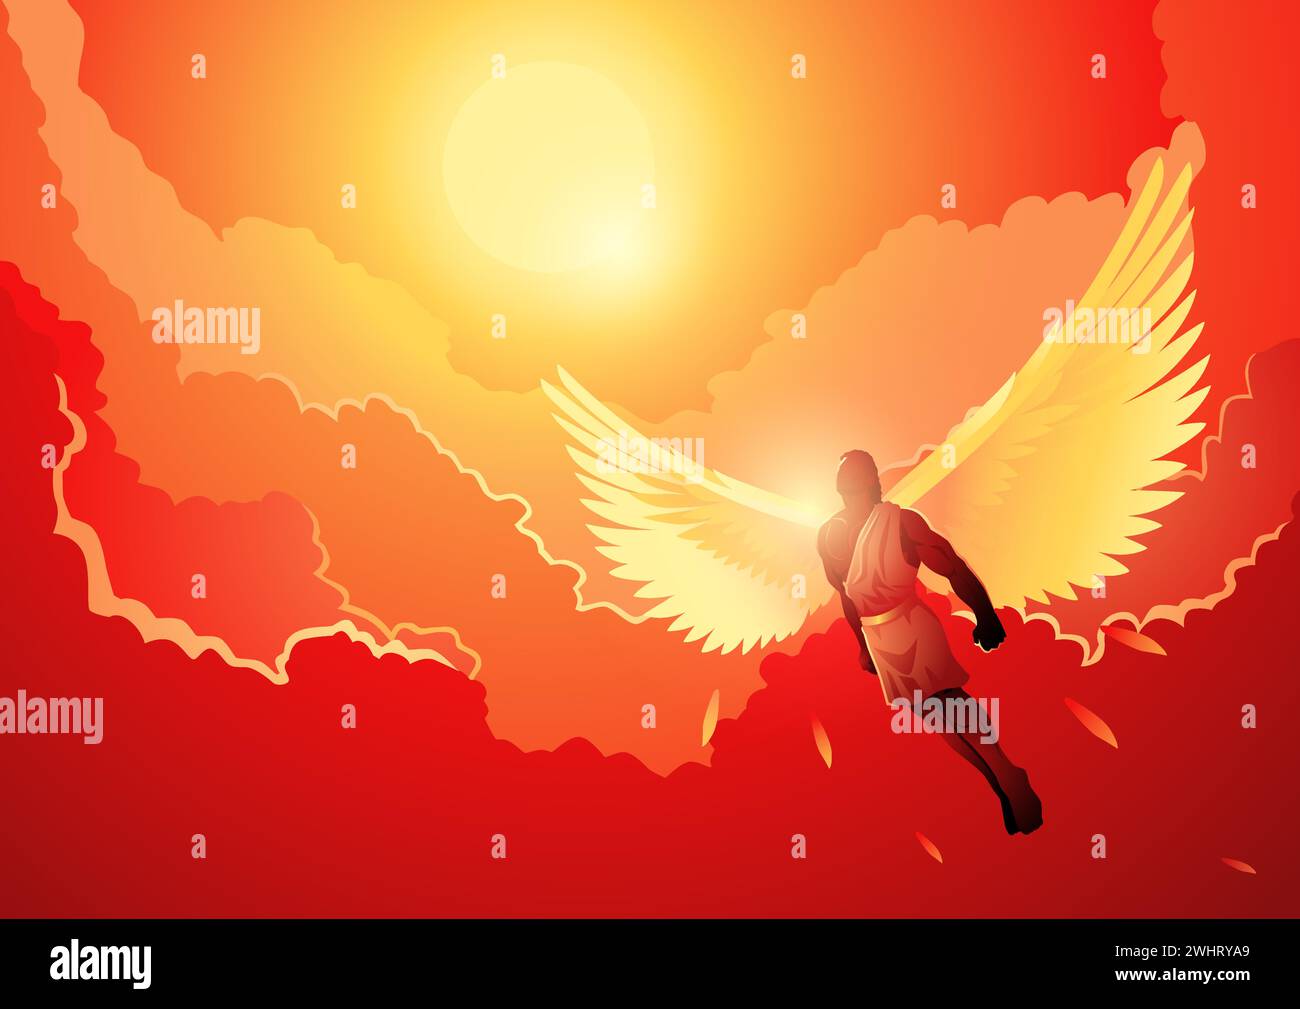 Mythologie grecque illustration vectorielle série, Icare, il avait le désir de voler aussi près du soleil que possible pour atteindre le ciel Illustration de Vecteur